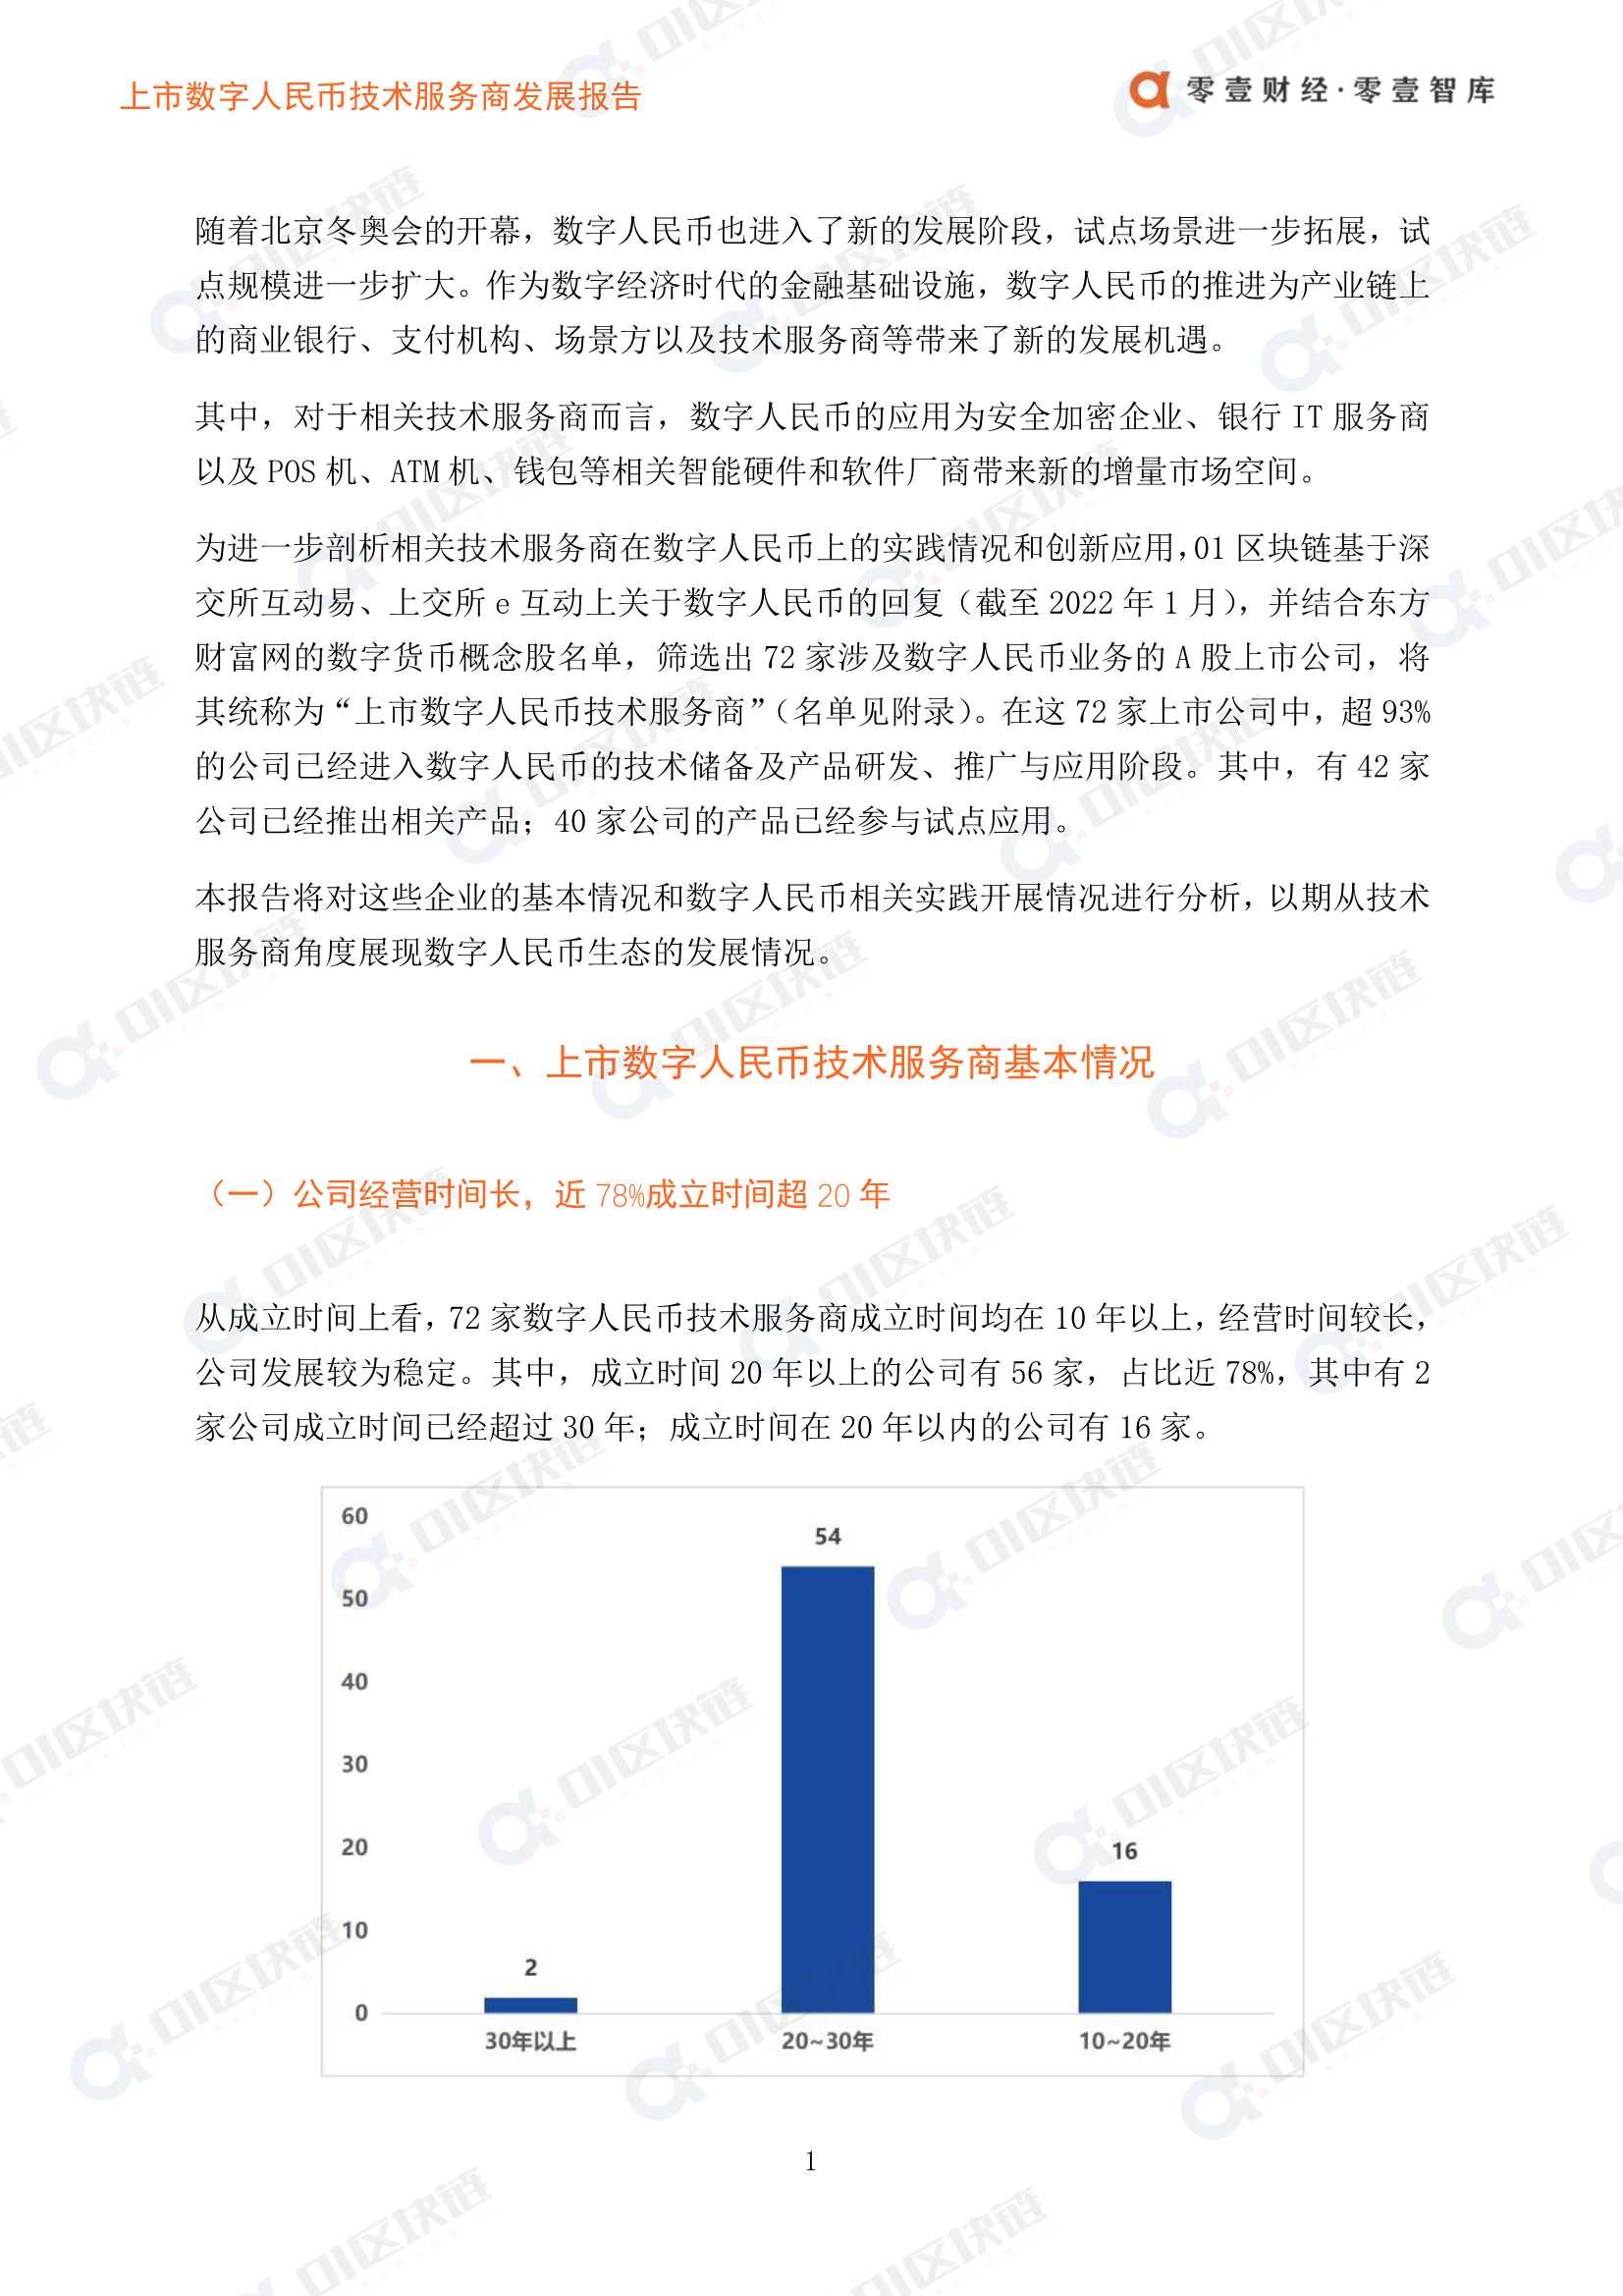 上市数字人民币技术服务商发展报告-2022.02-15页